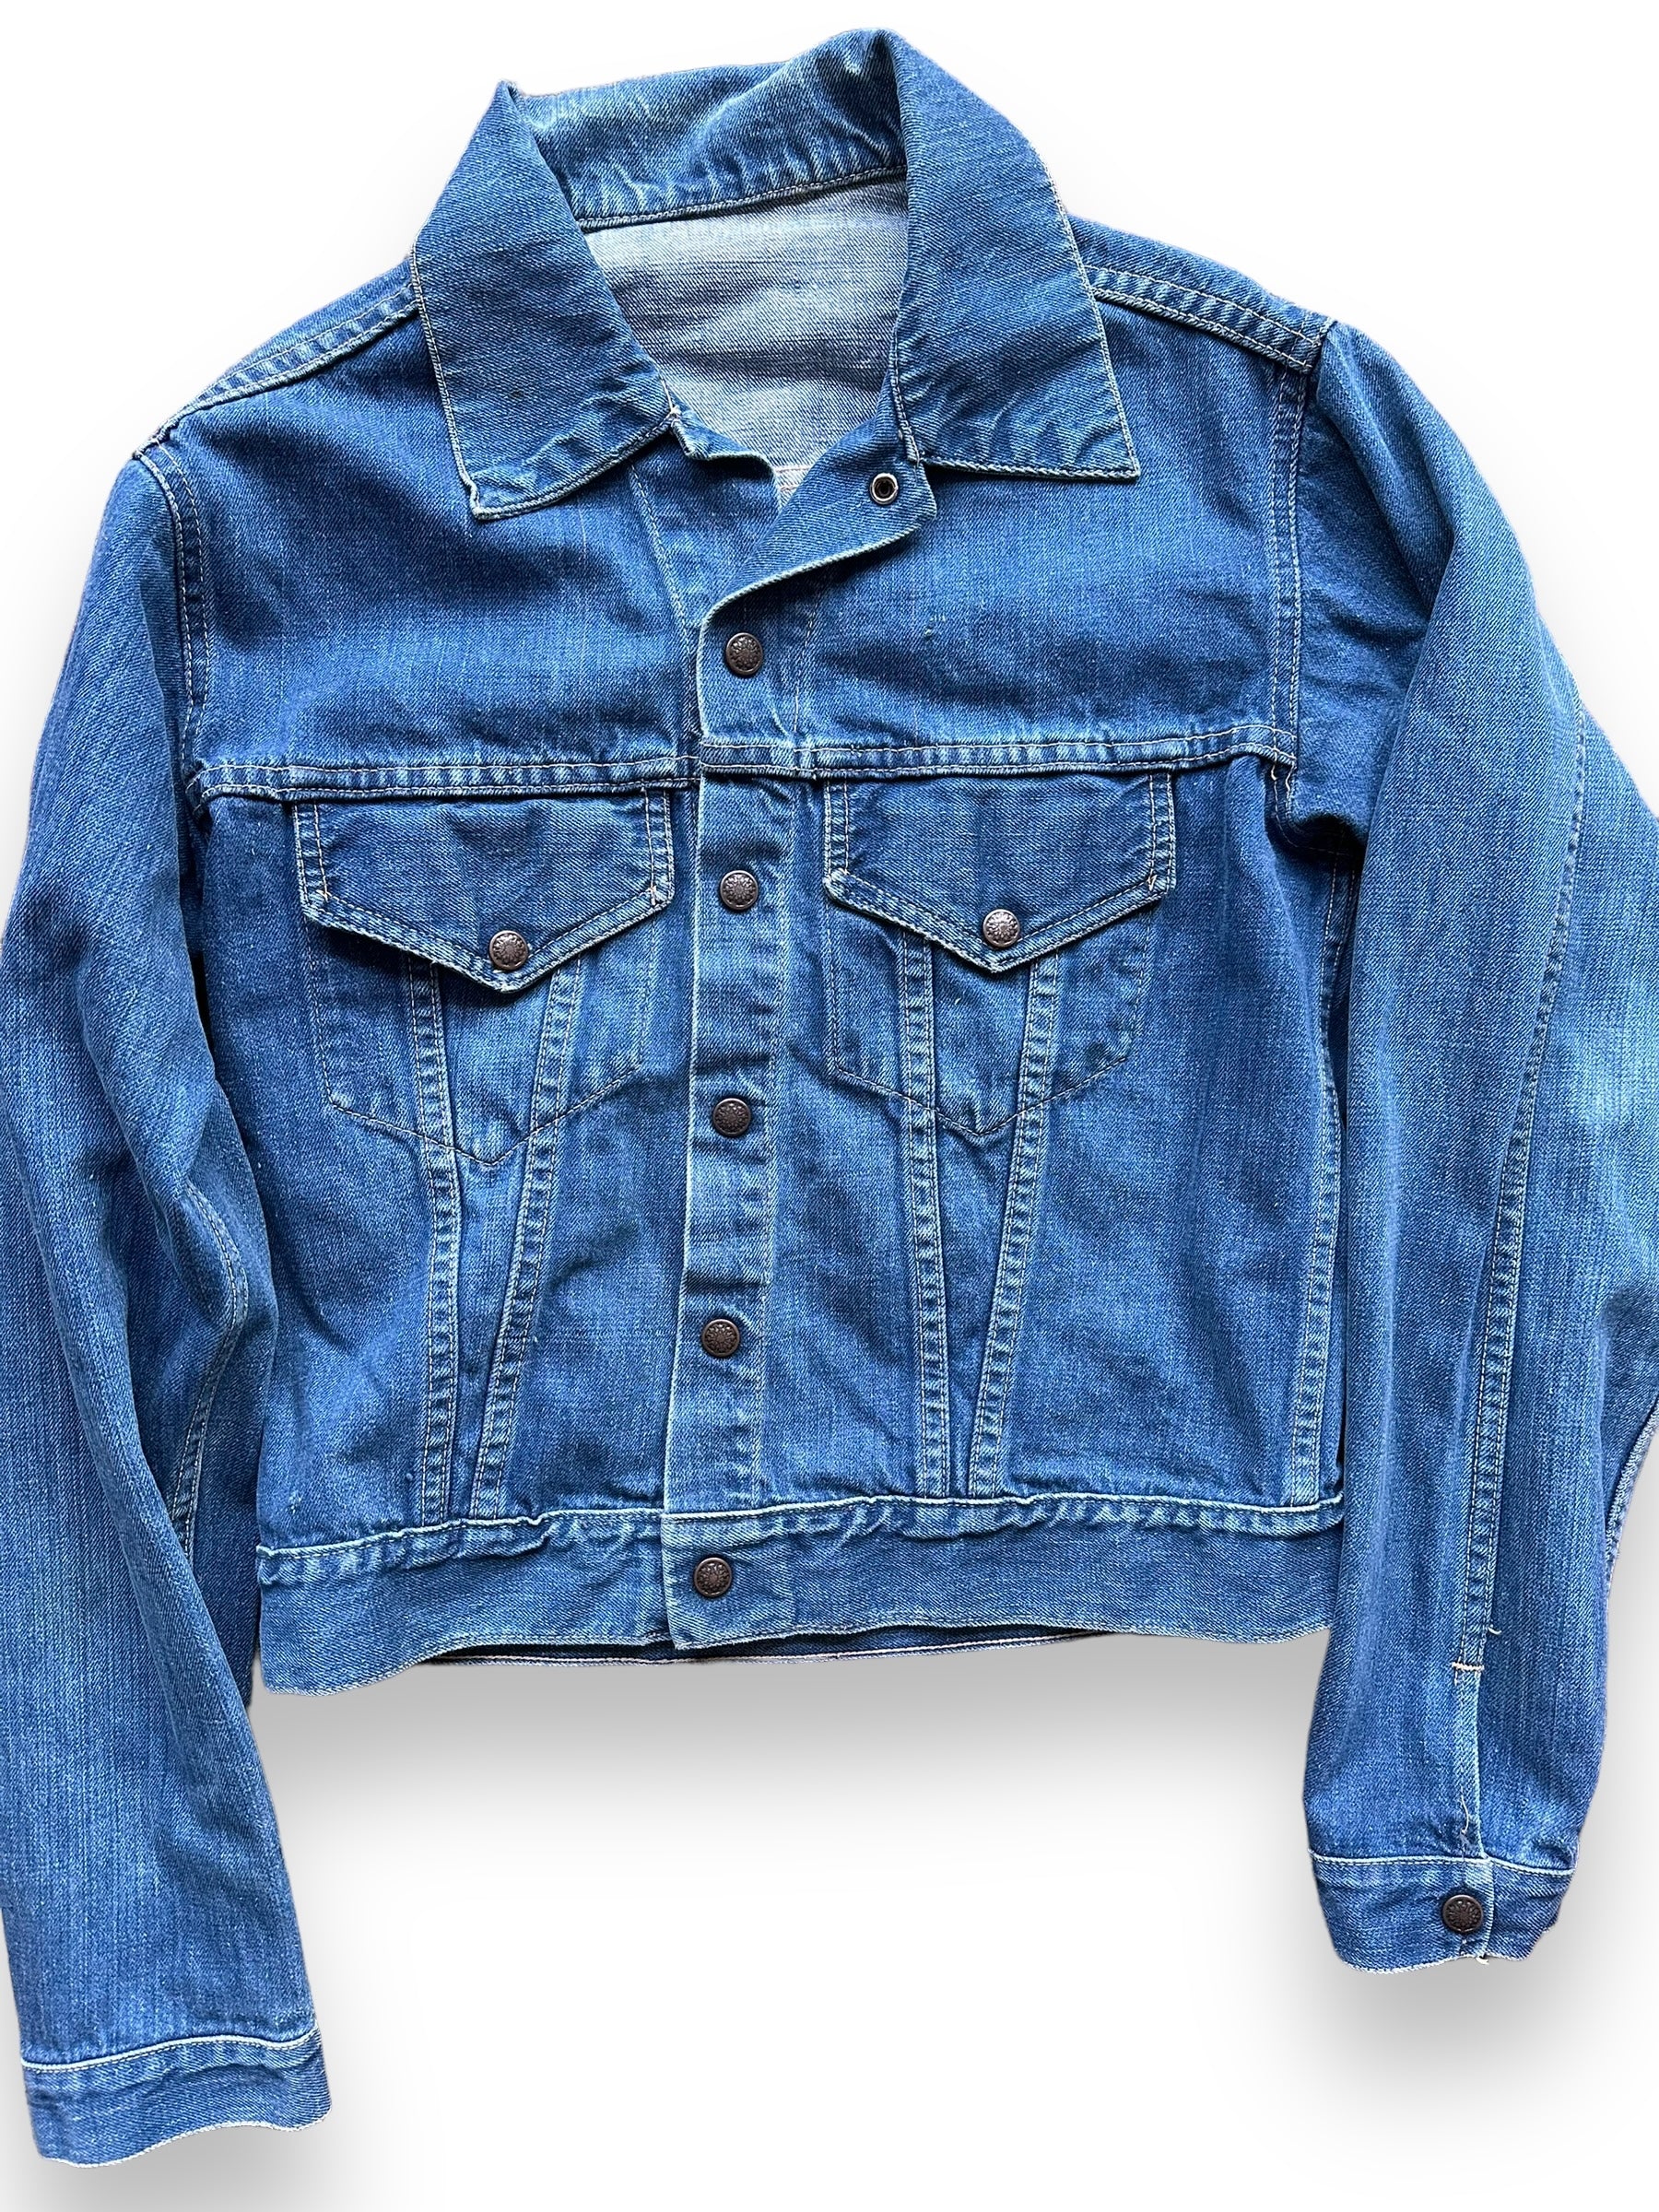 Front Detail on Vintage Unbranded Type 3 Denim Jacket SZ M | Vintage Denim Jacket Seattle | Seattle Vintage Denim